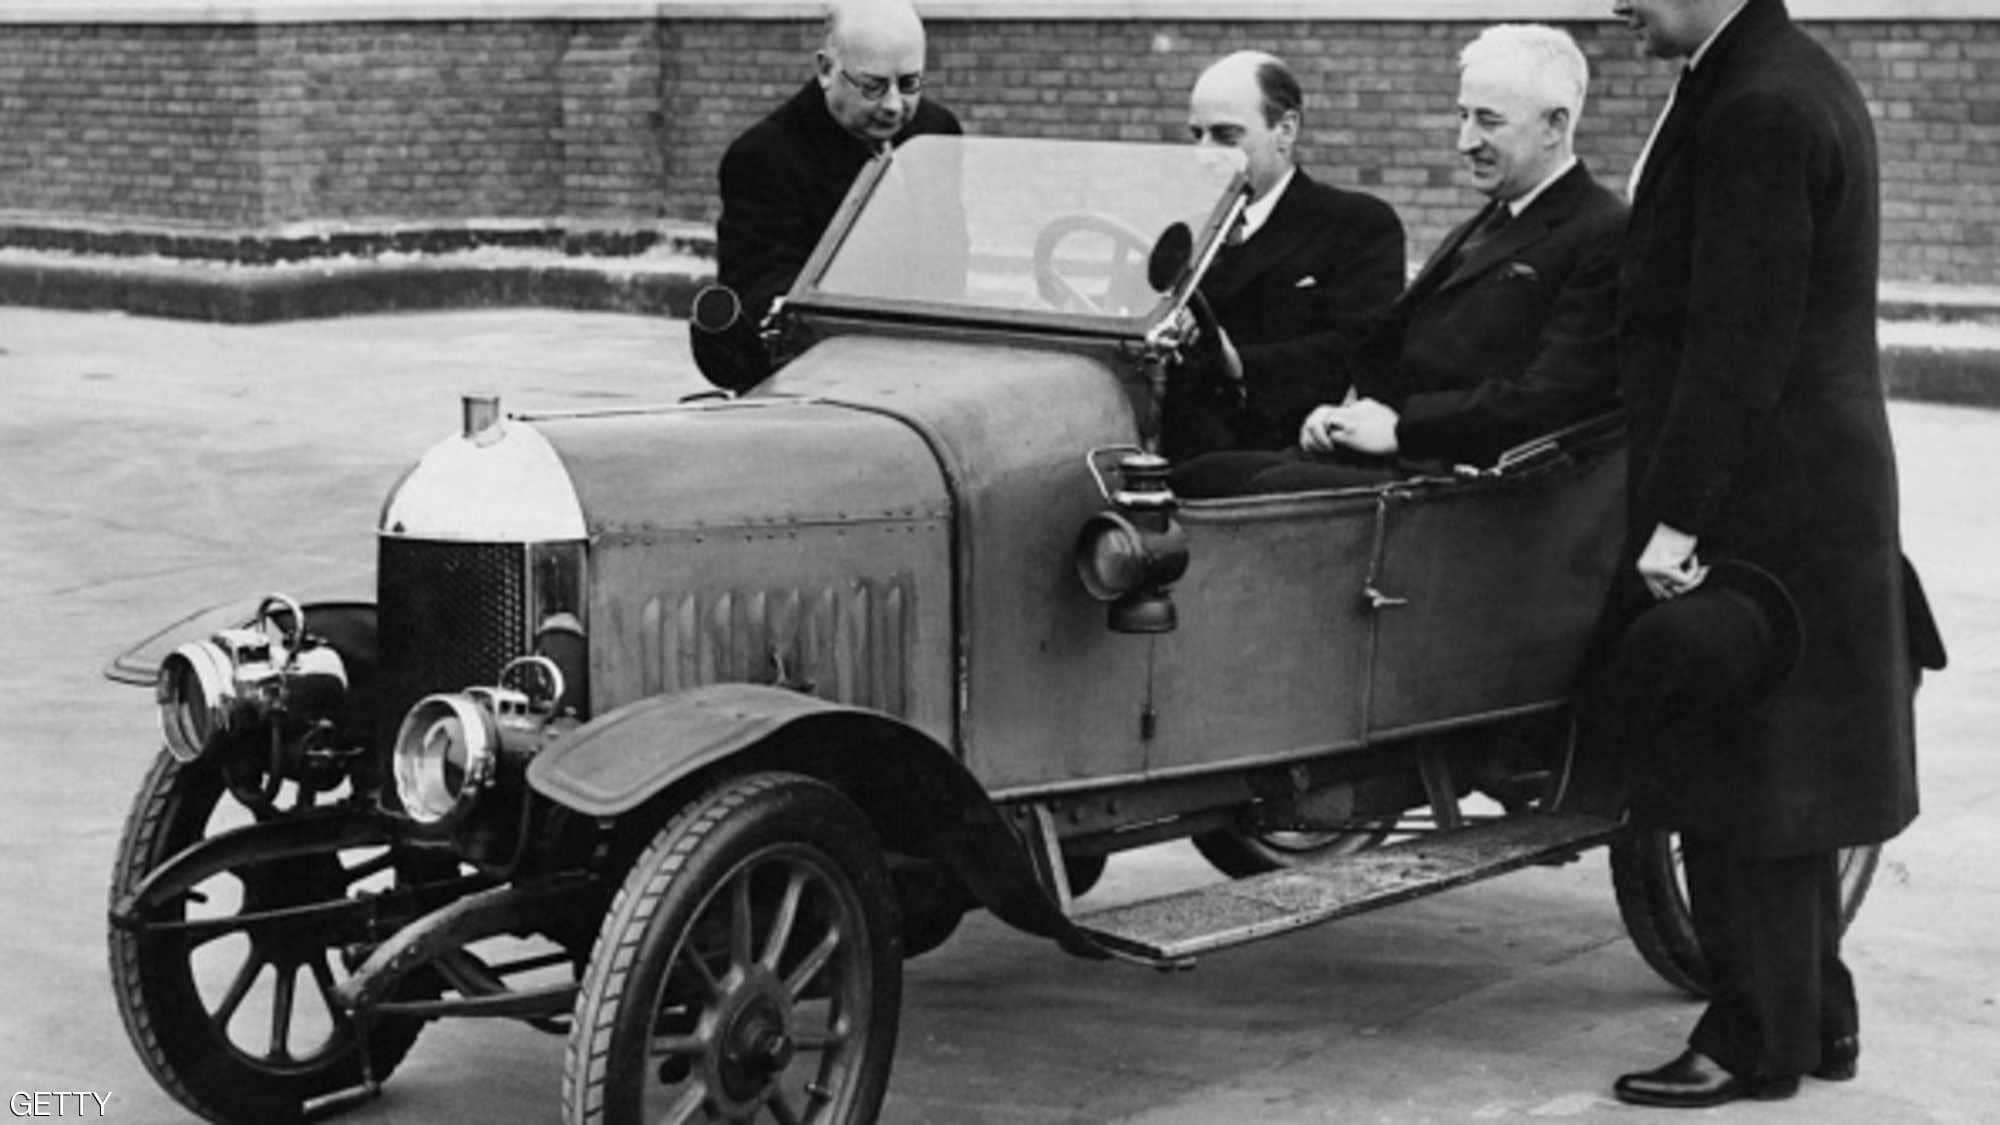 "بالصور" هذا ما بدت عليه السيارات قبل 100 عام من الآن 6